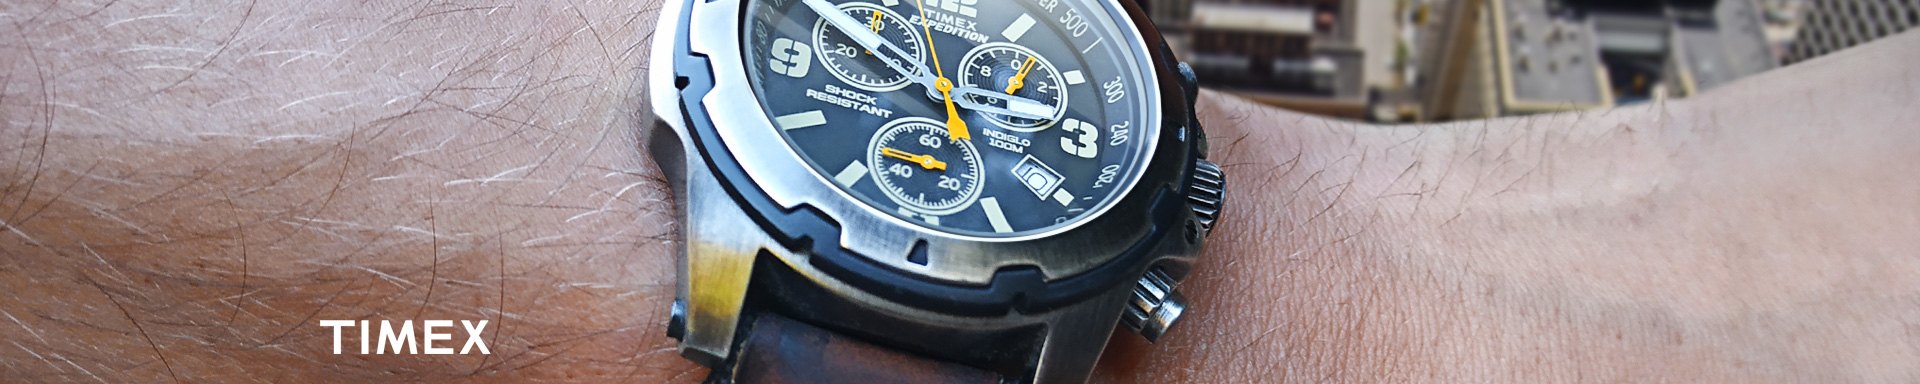 Timex Wrist Watches